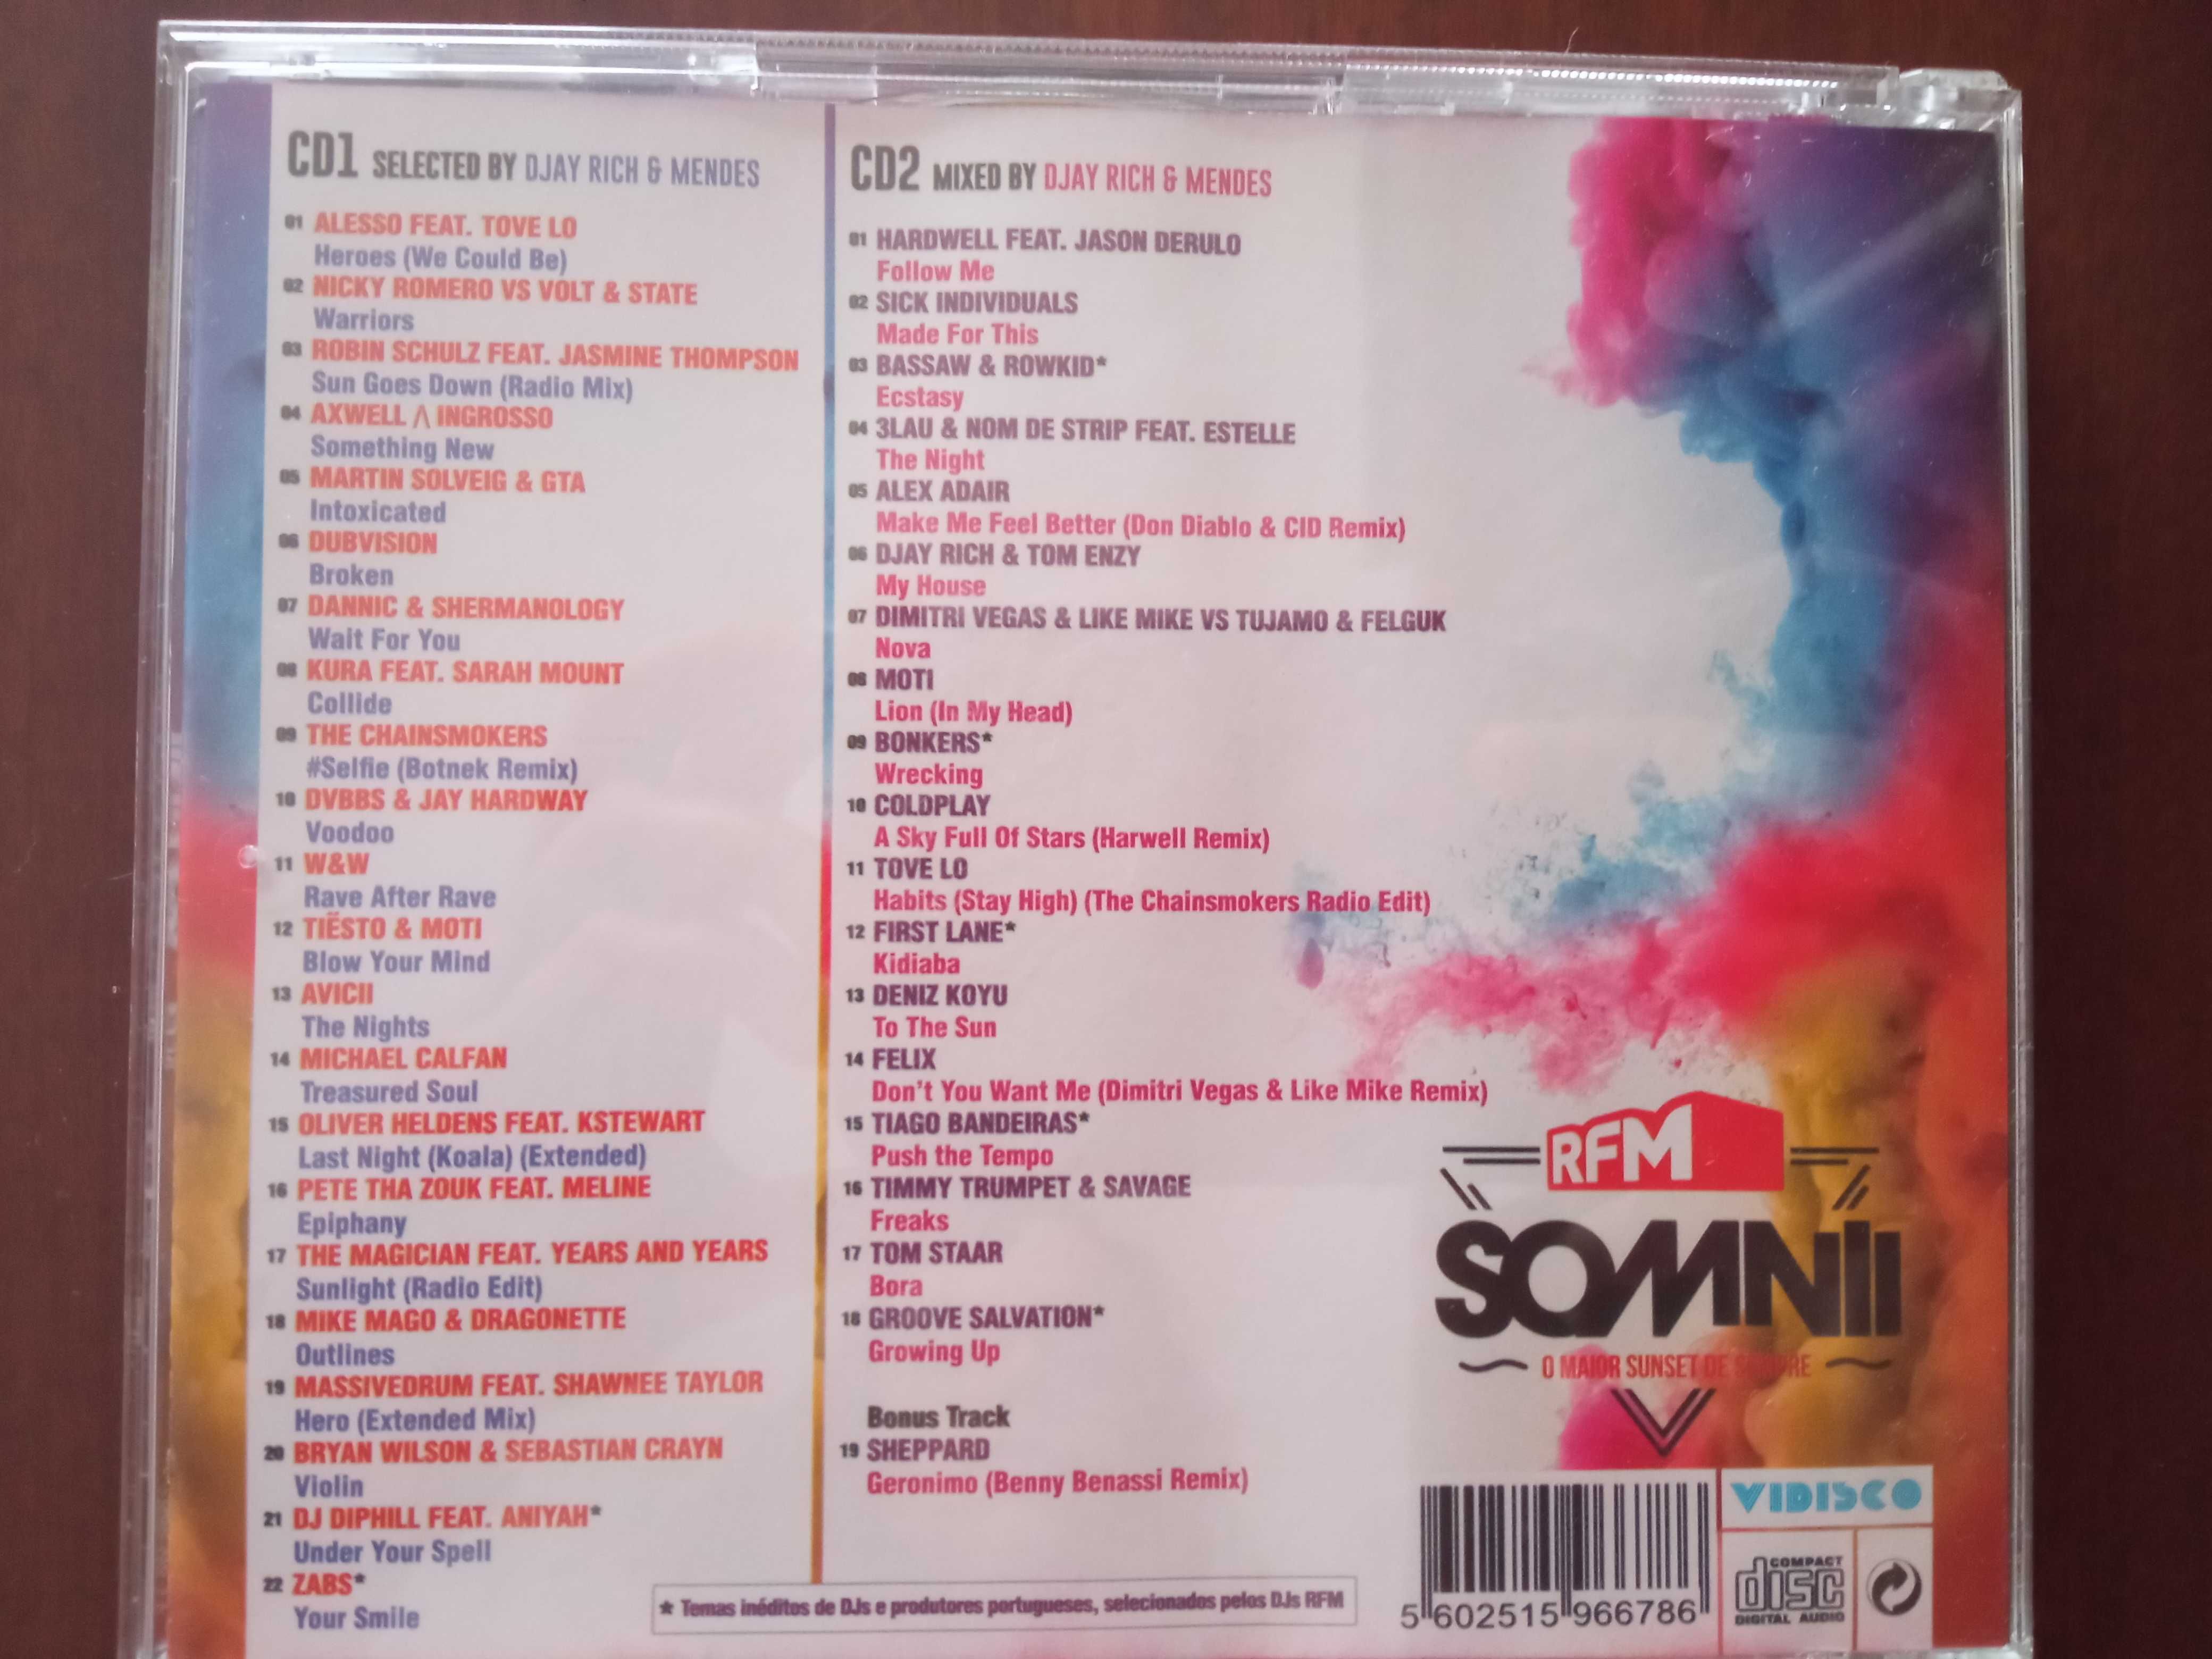 CD RFM - Somnii novo